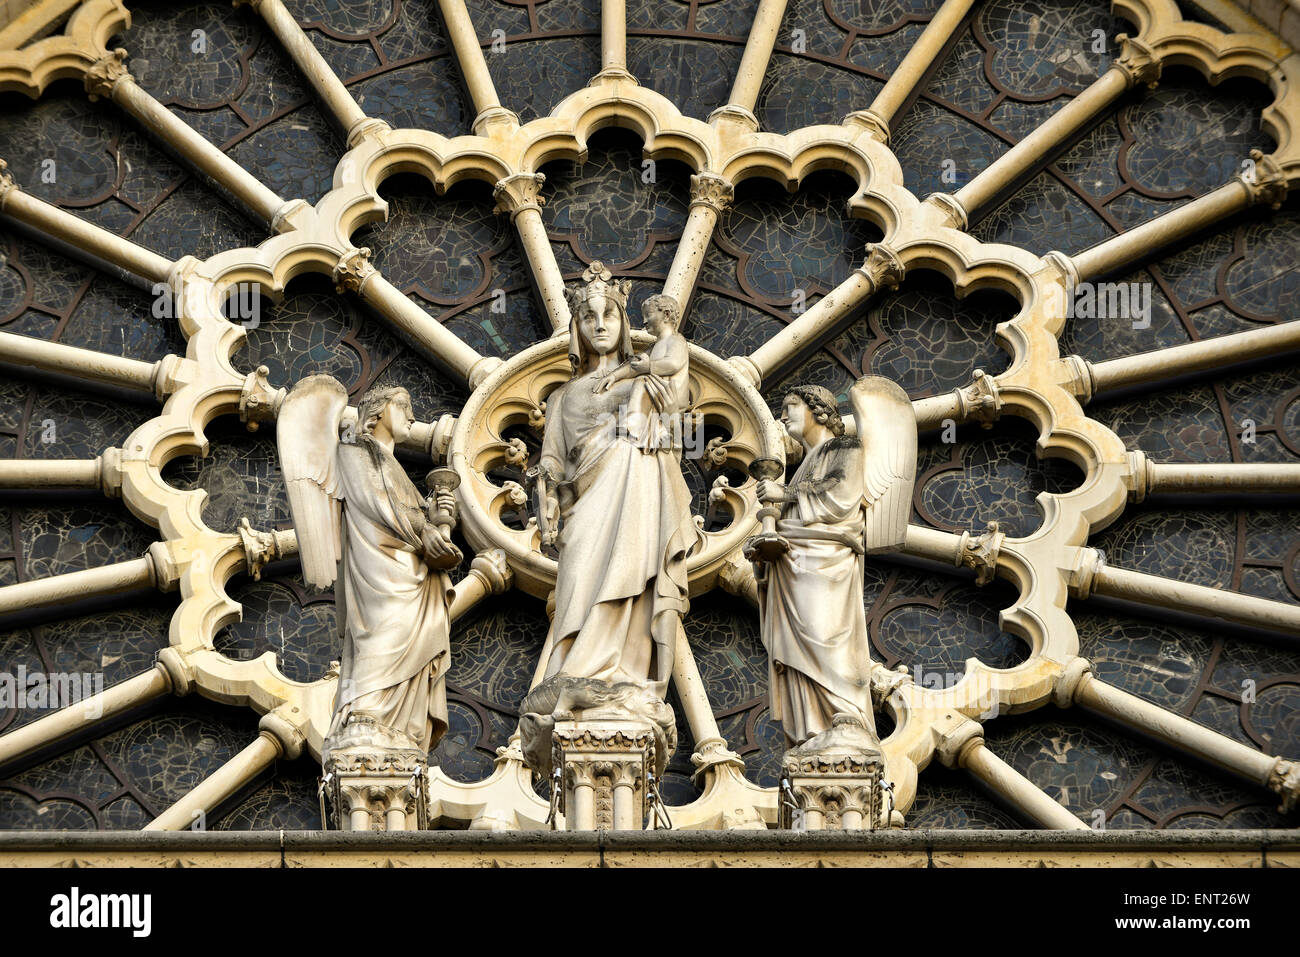 Figures in a rose window, Notre Dame de Paris Cathedral, west facade, Île de la Cité, Paris, France Stock Photo